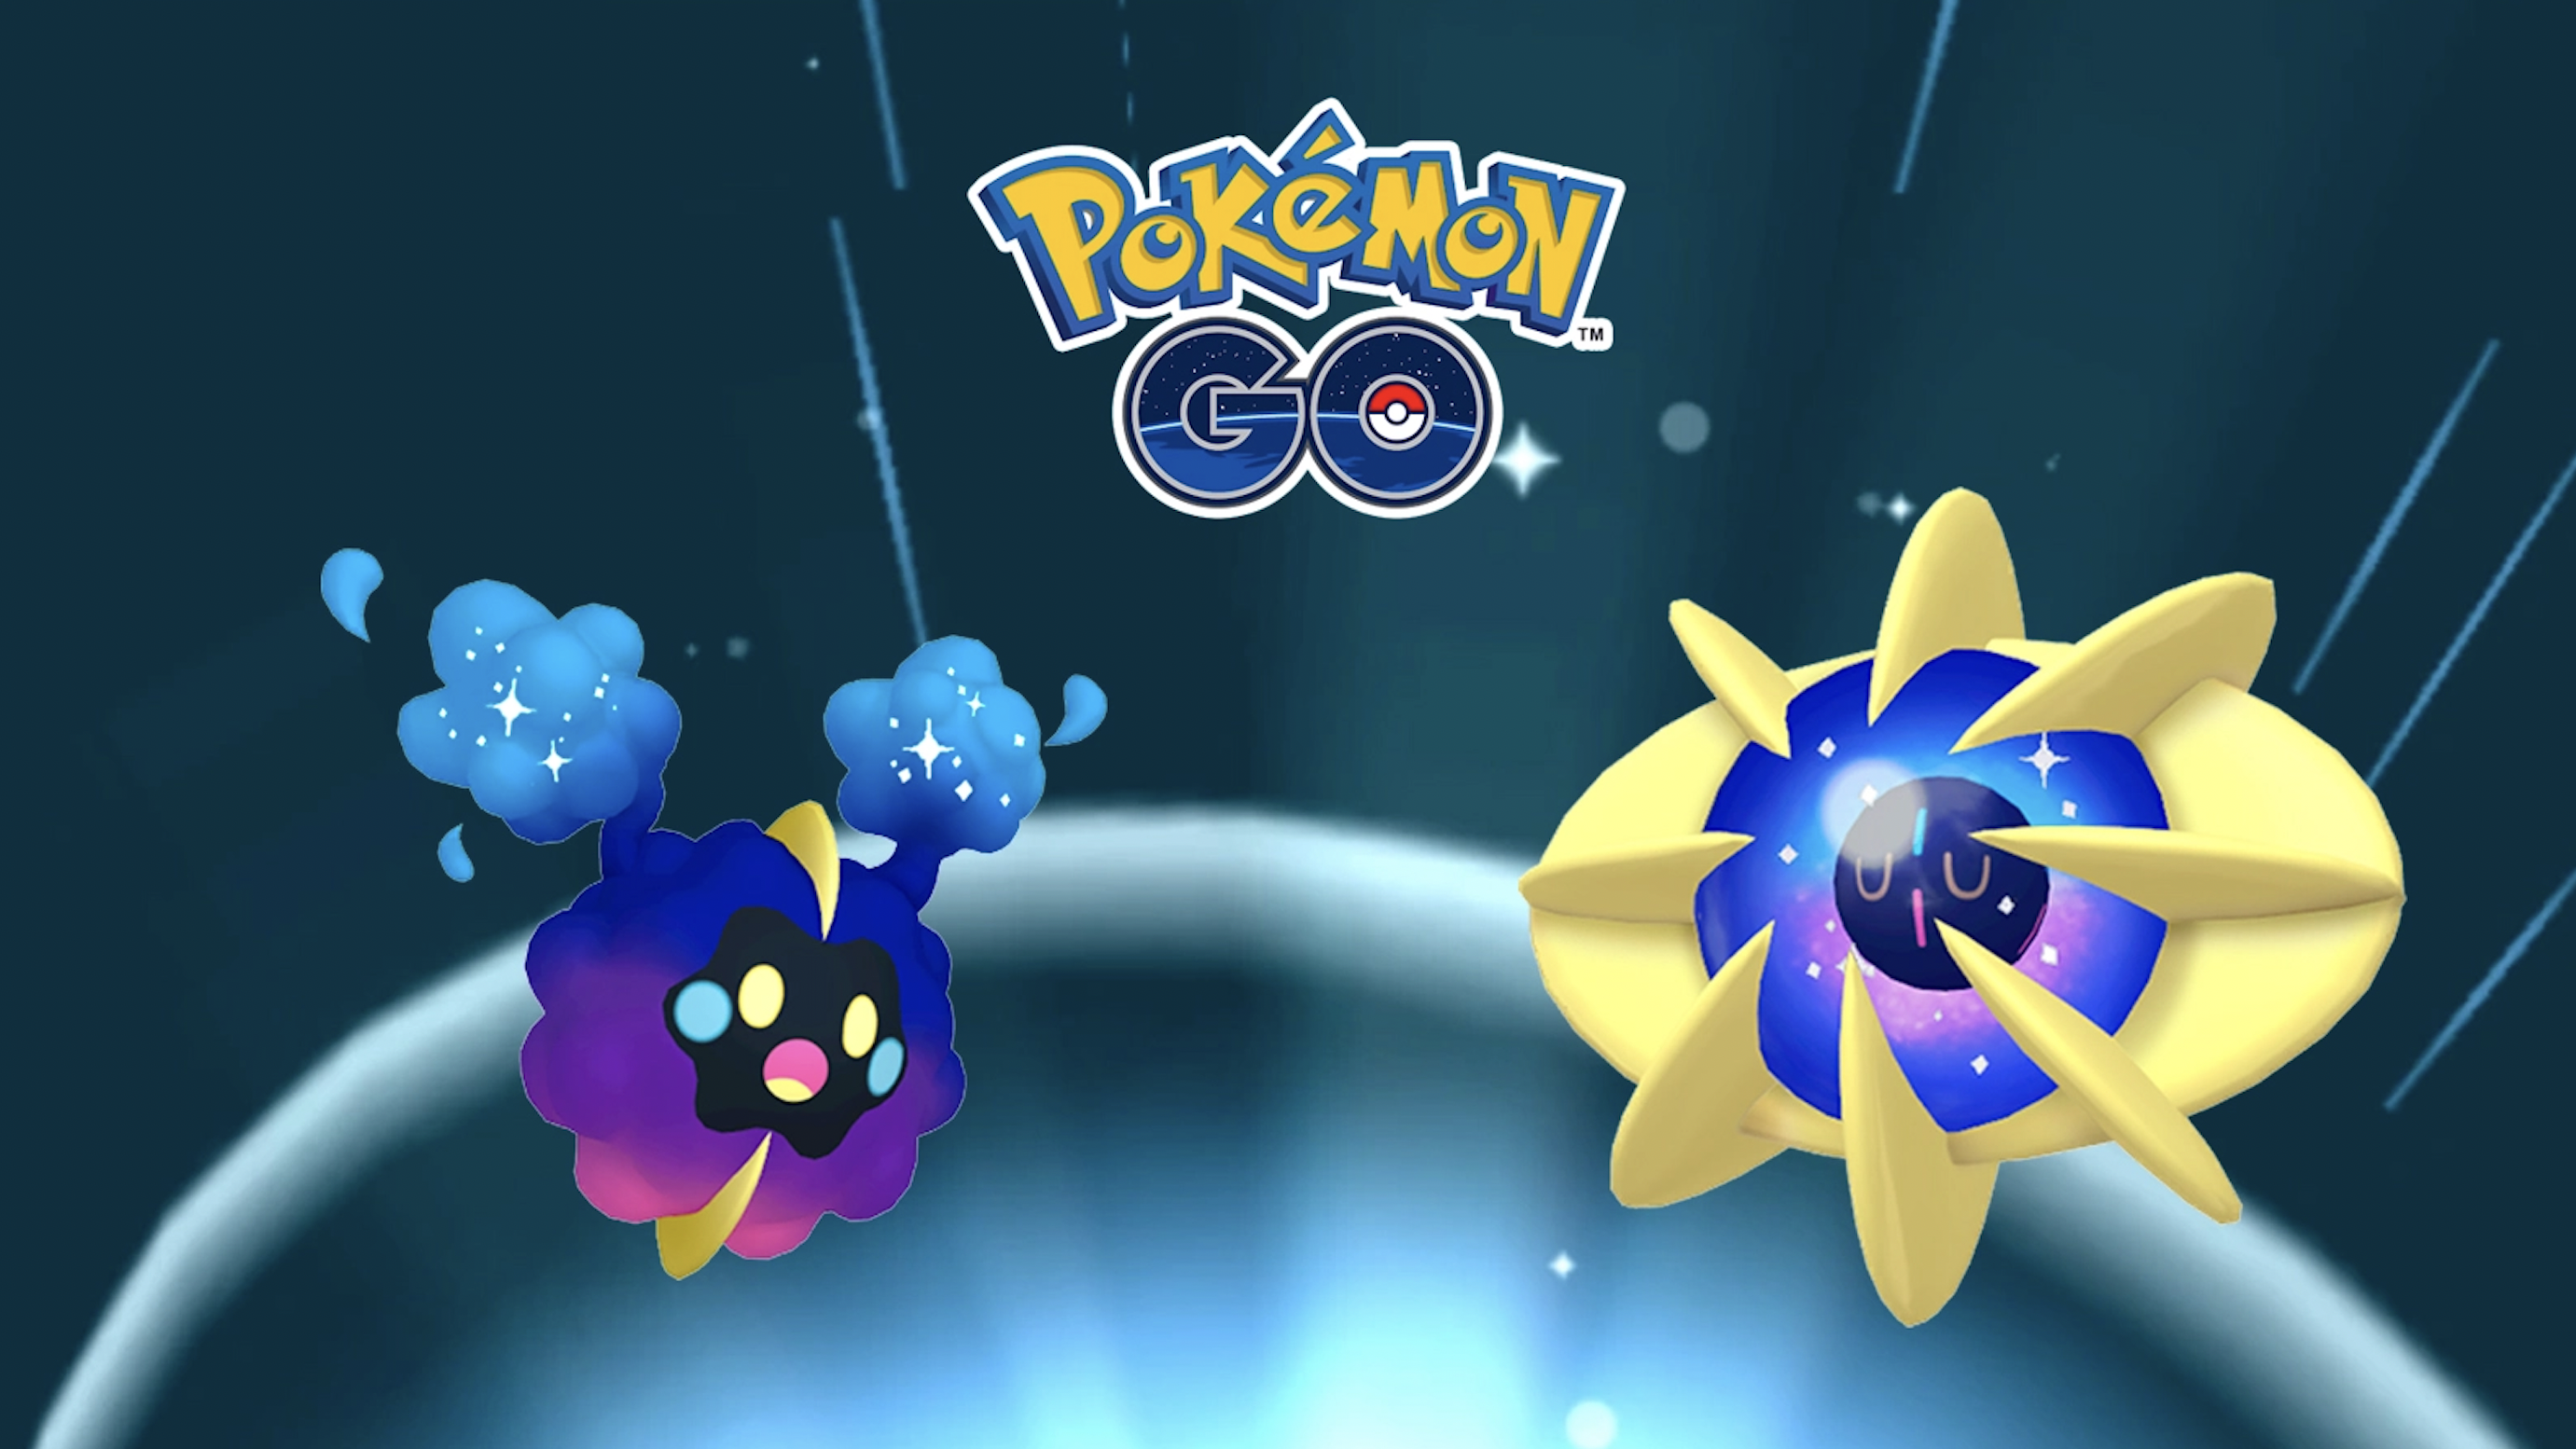 Pokémon Go: Космогийг хэрхэн хөгжүүлэх вэ